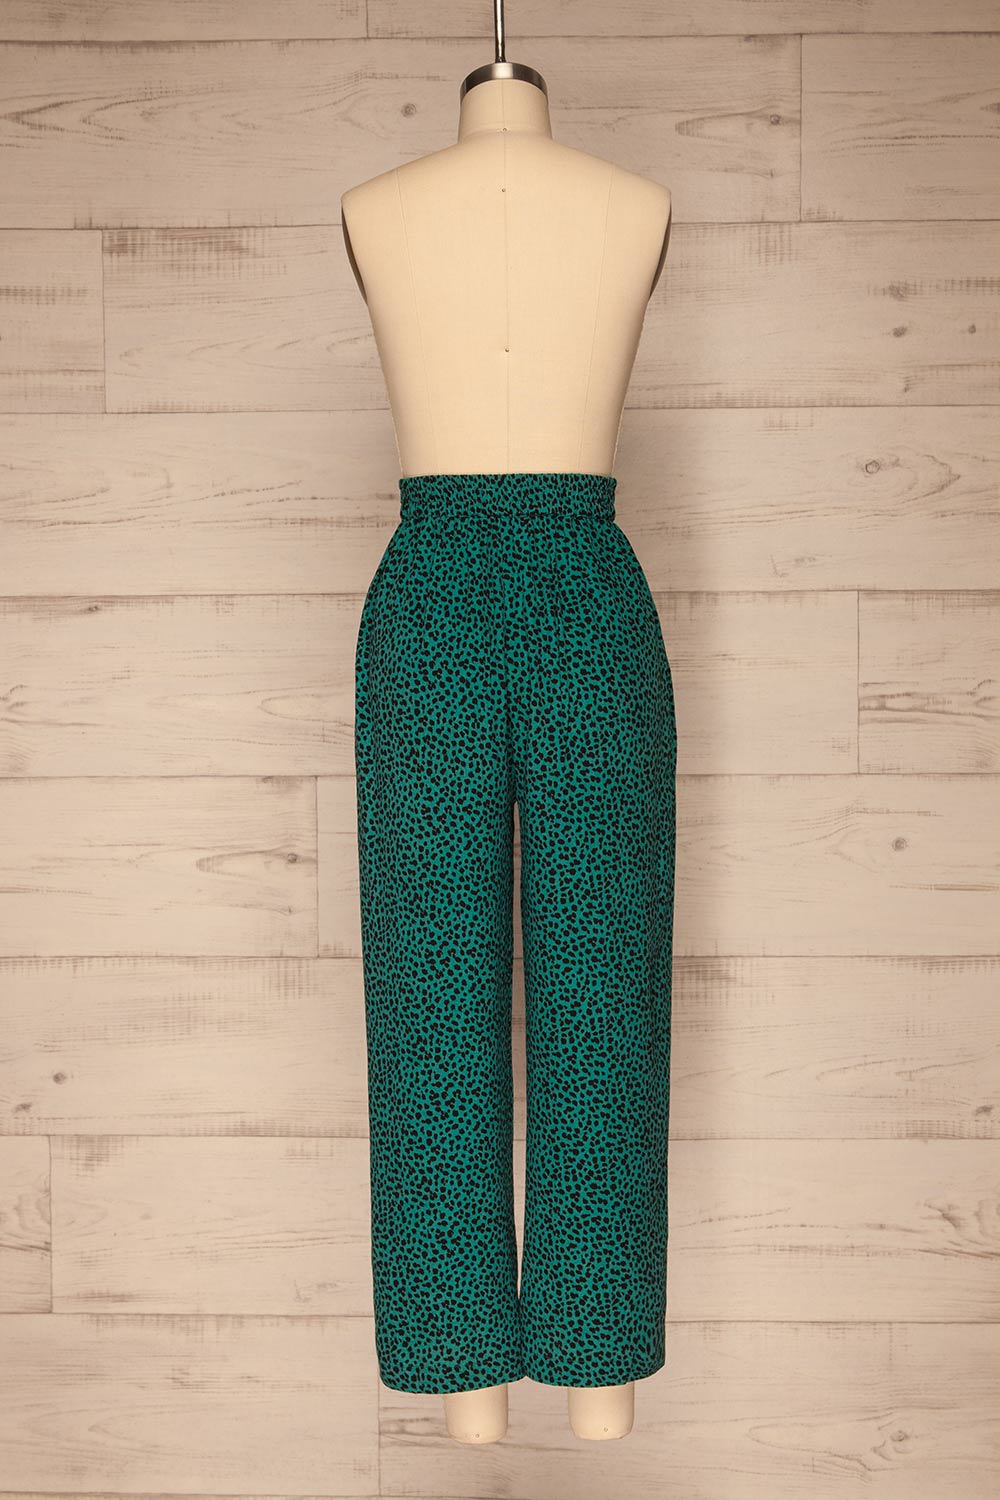 Canaveral Emerald Pants w/ Leopard Print | La petite garçonne back view